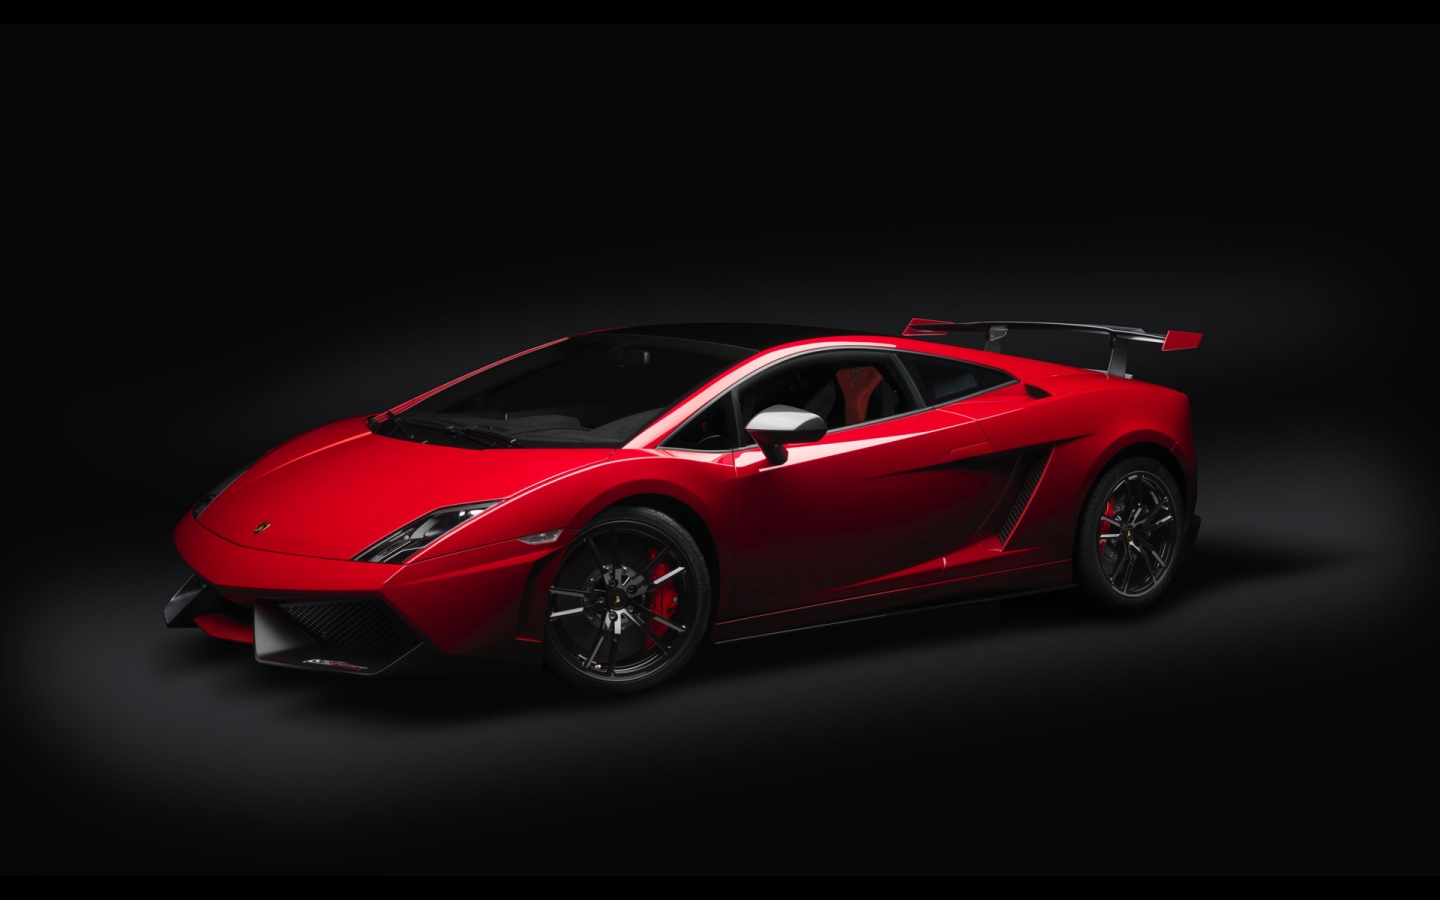 2012 Lamborghini Gallardo LP 570 for 1440 x 900 widescreen resolution